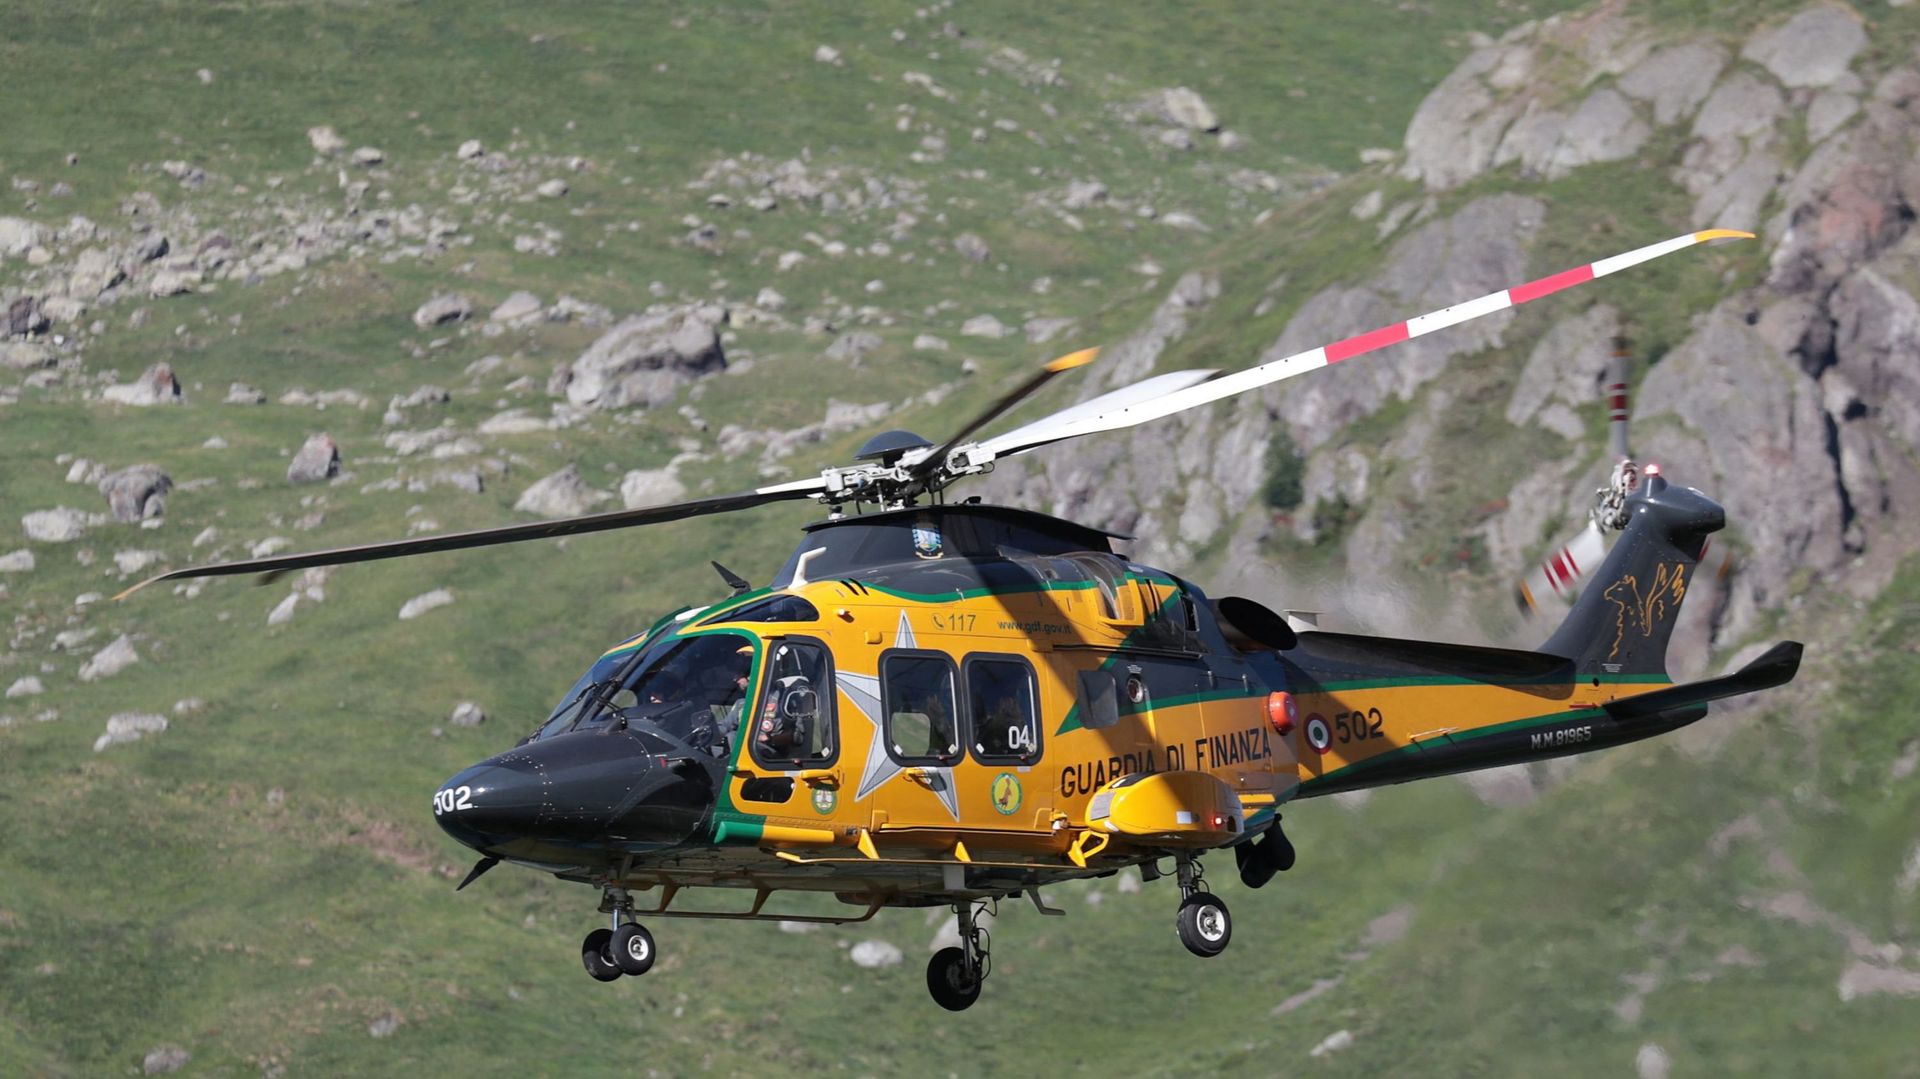 Les hélicoptère « Guardia di Finanzia » volent au-dessus de la montagne Marmolada, près de Canazei, un jour après l’effondrement d’un sérac de glace.